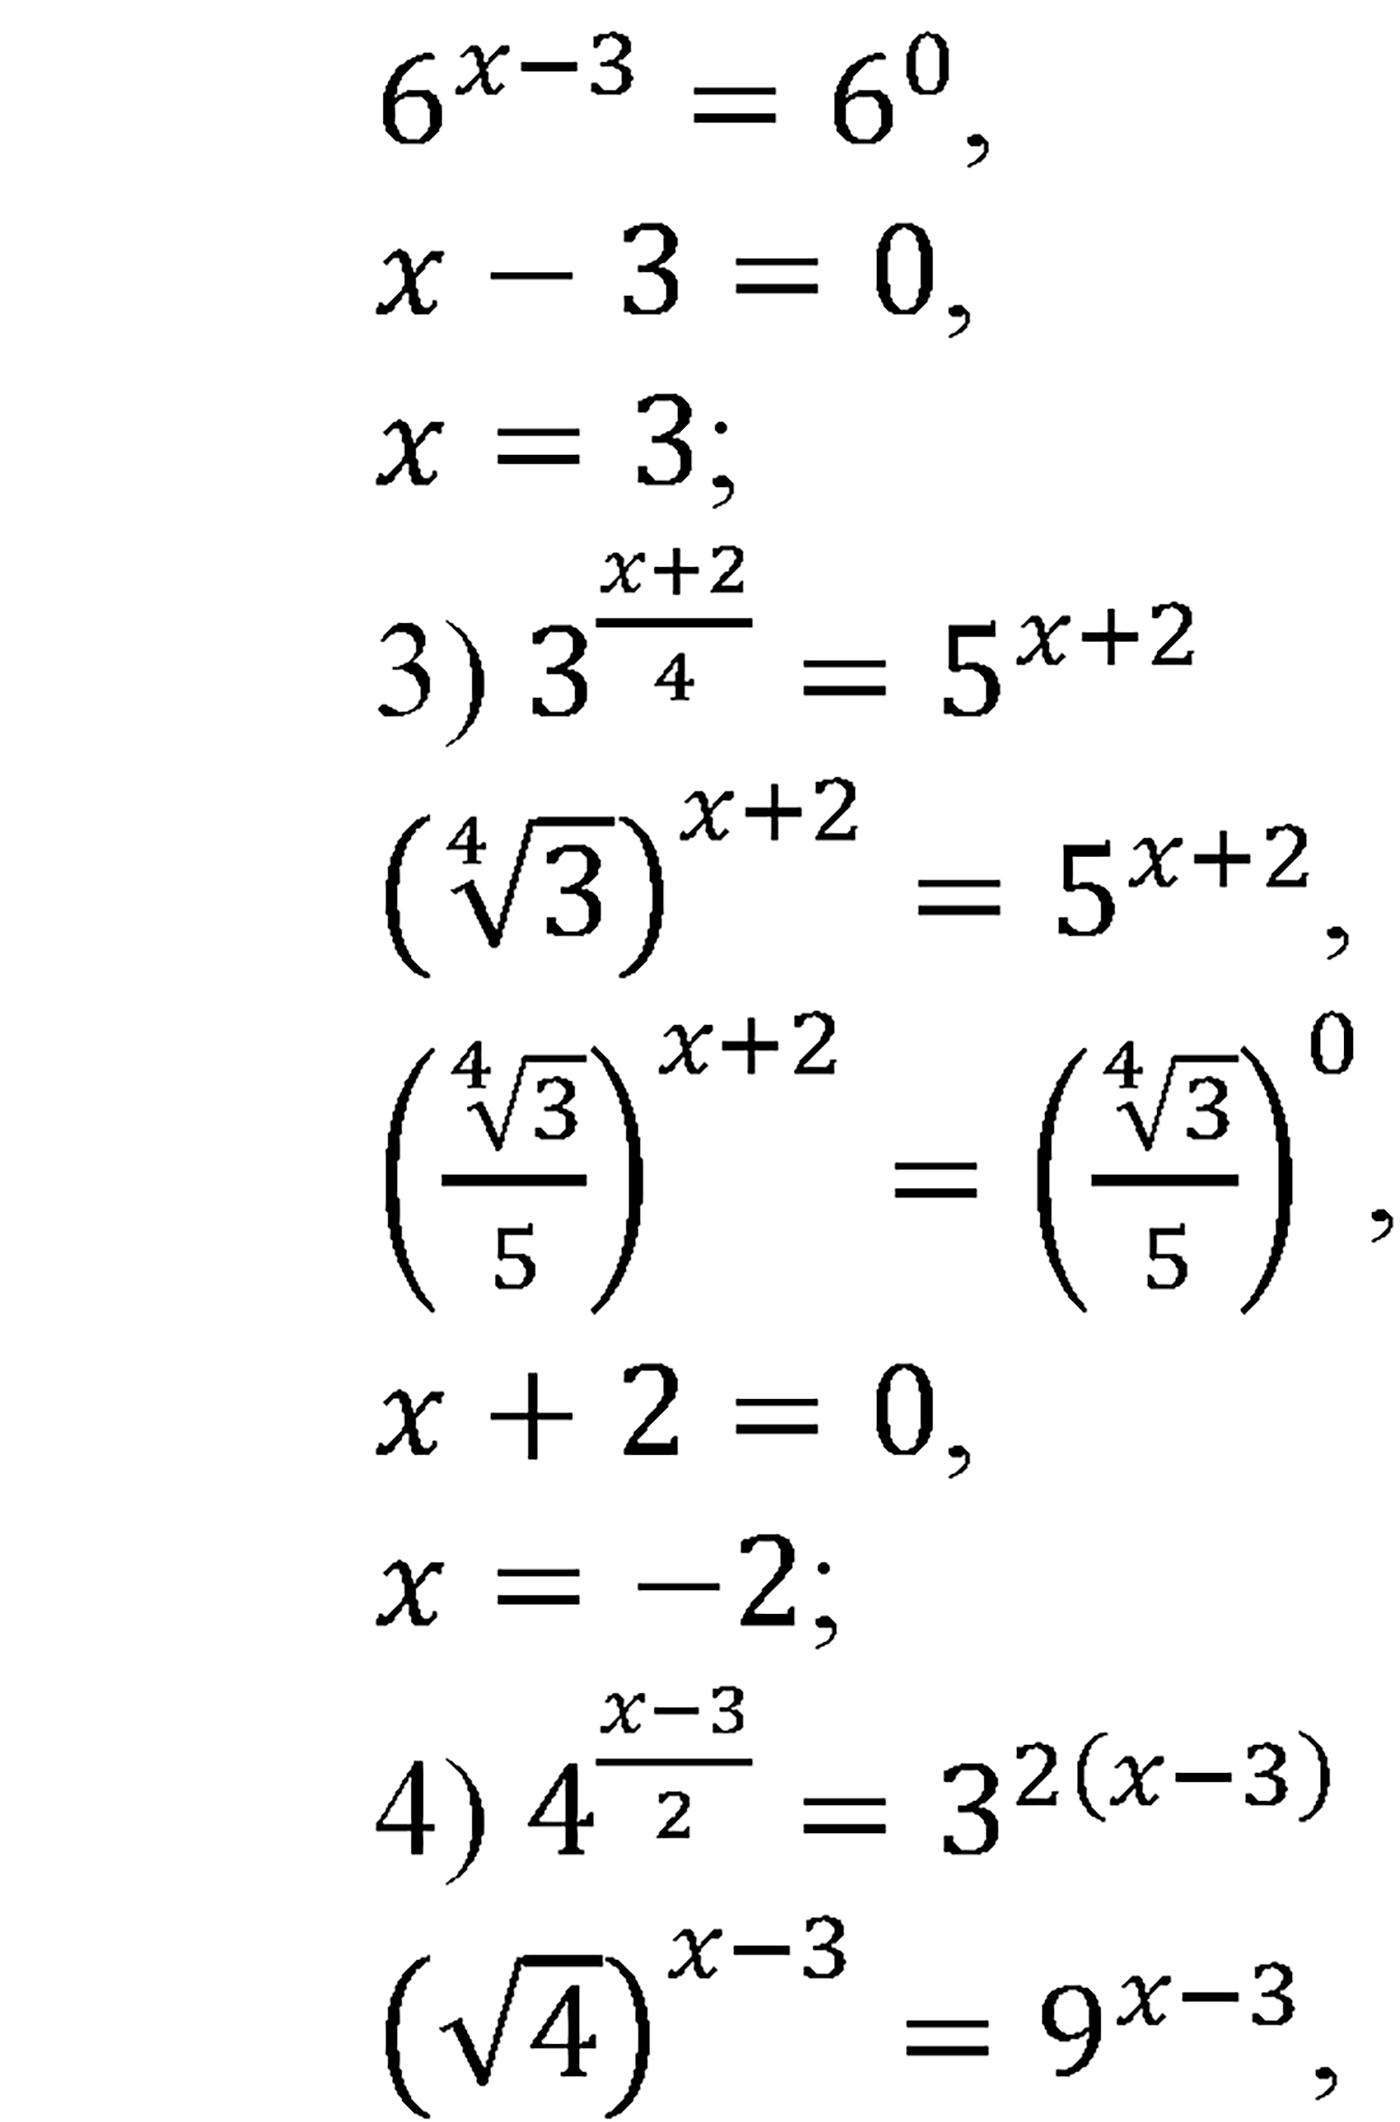 разбор задачи №219 по алгебре за 10-11 класс из учебника Алимова, Колягина